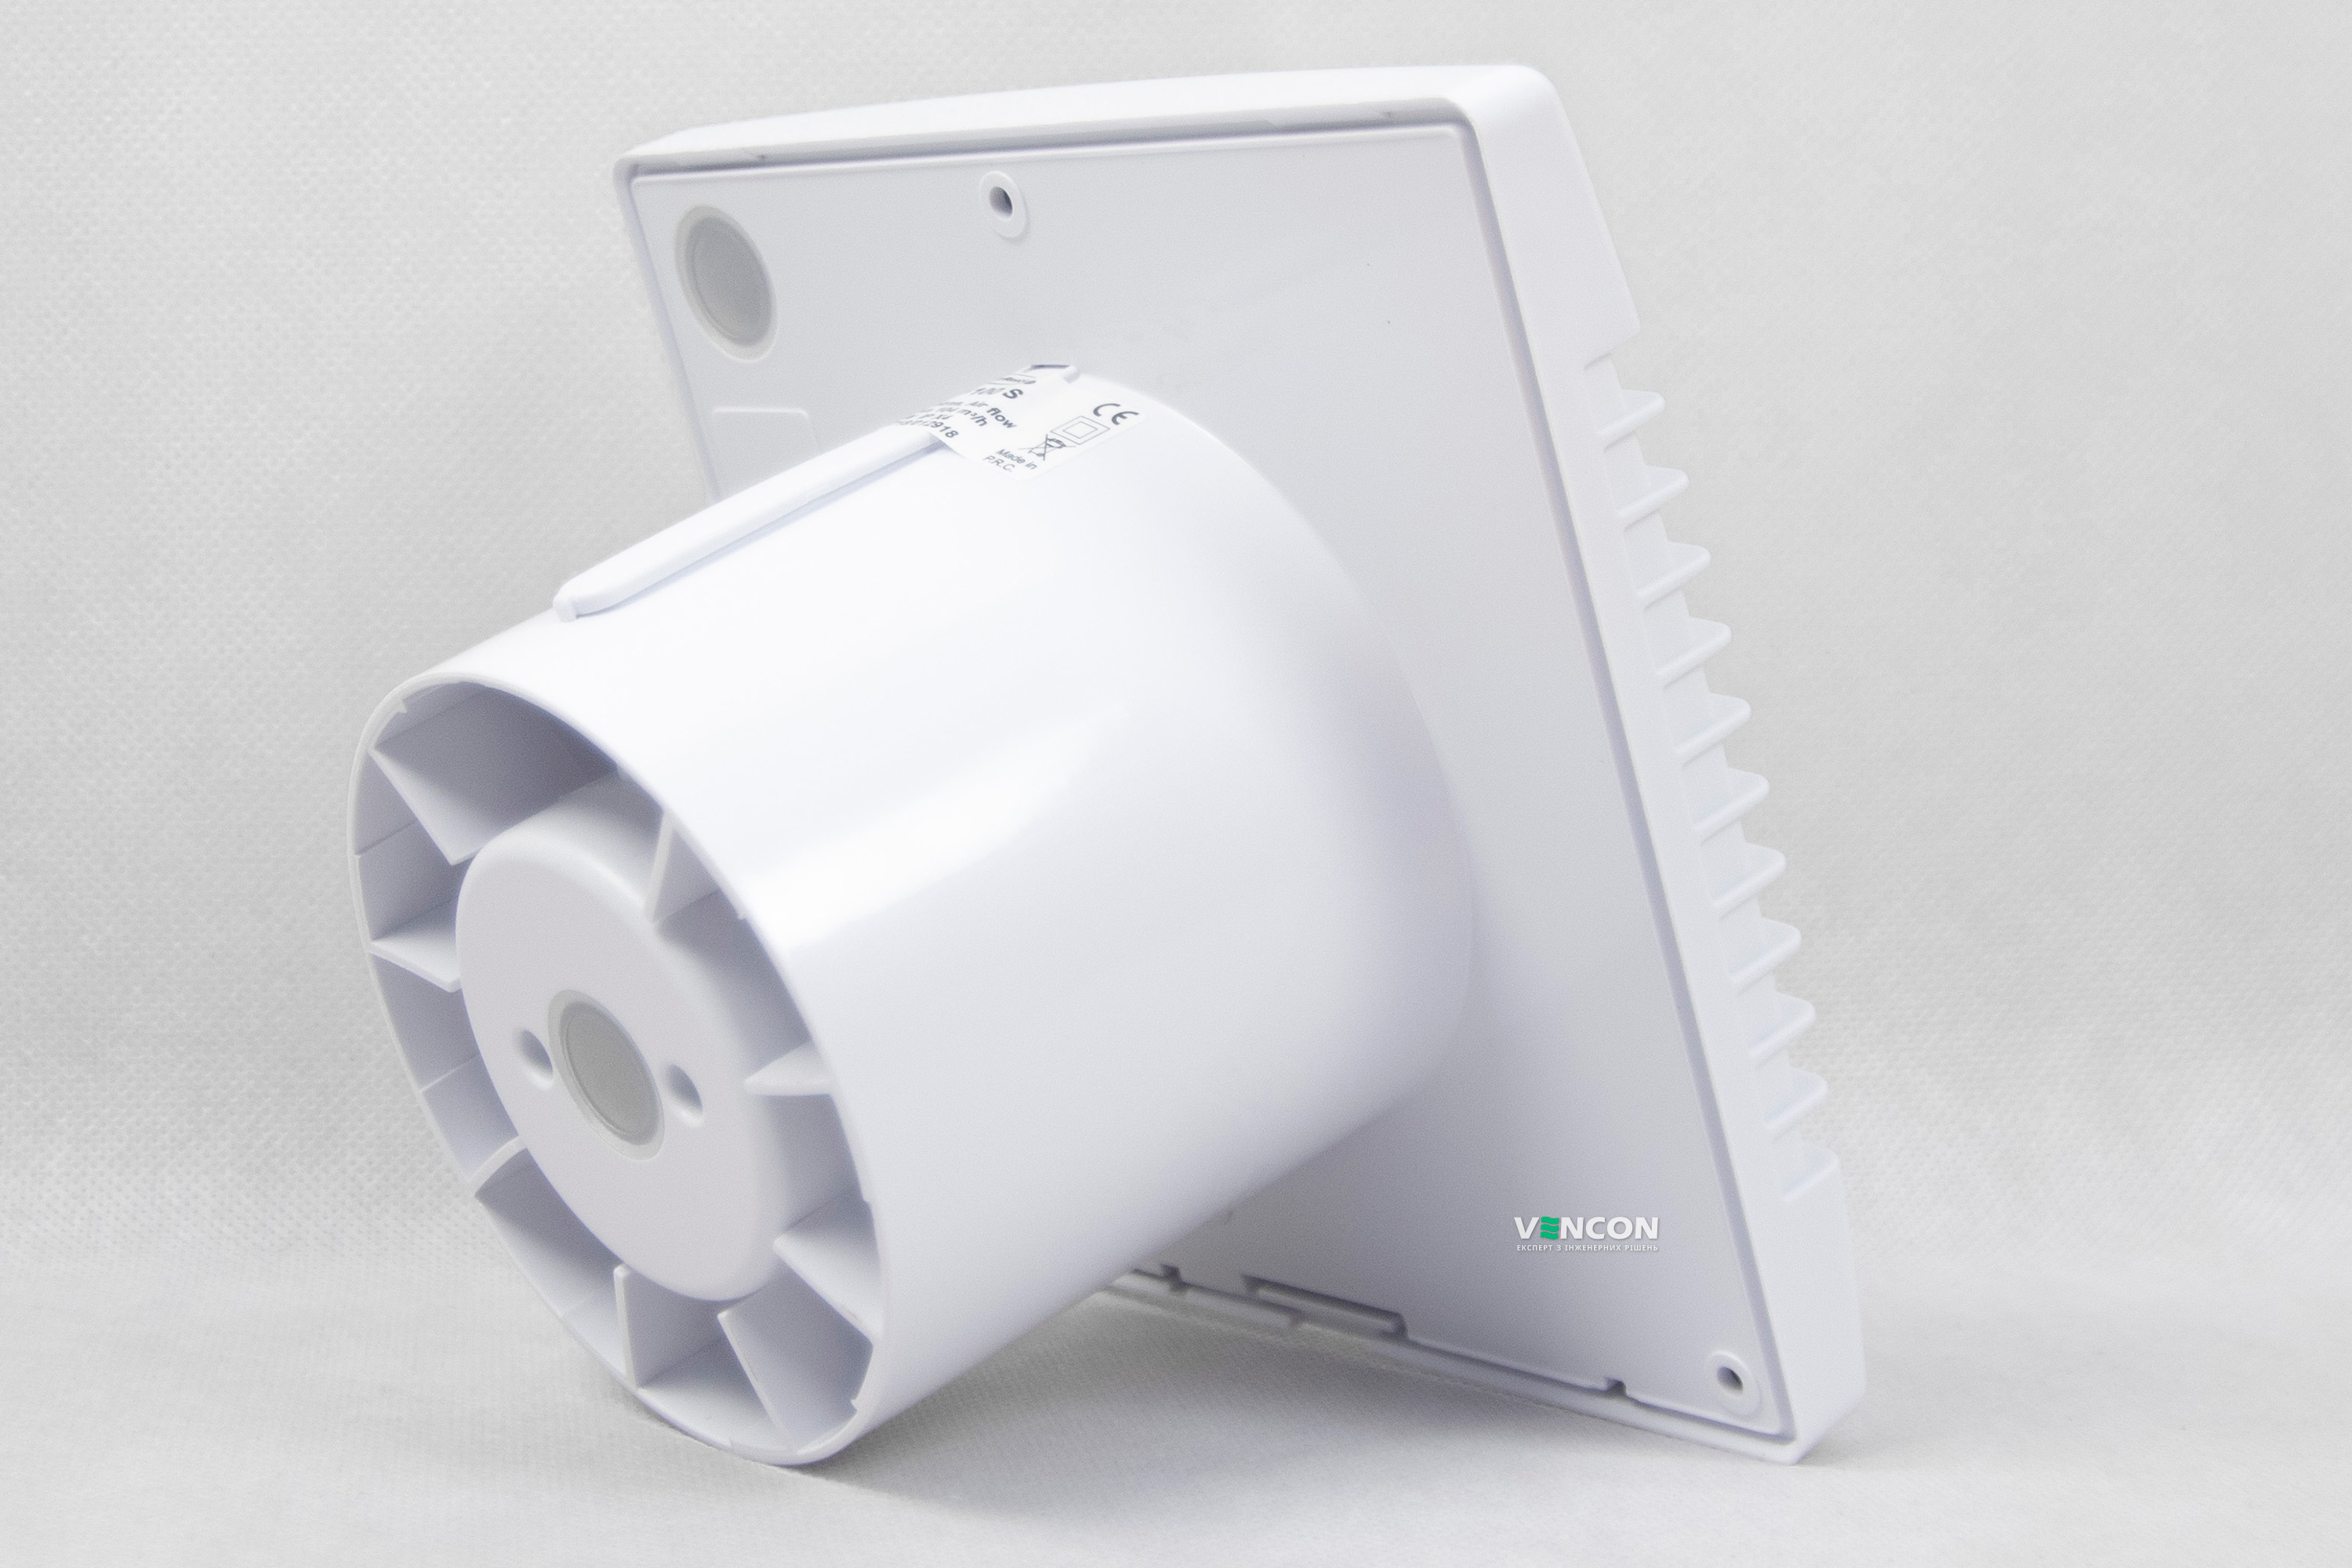 Вытяжной вентилятор AirRoxy pRim 100 S (01-001) отзывы - изображения 5